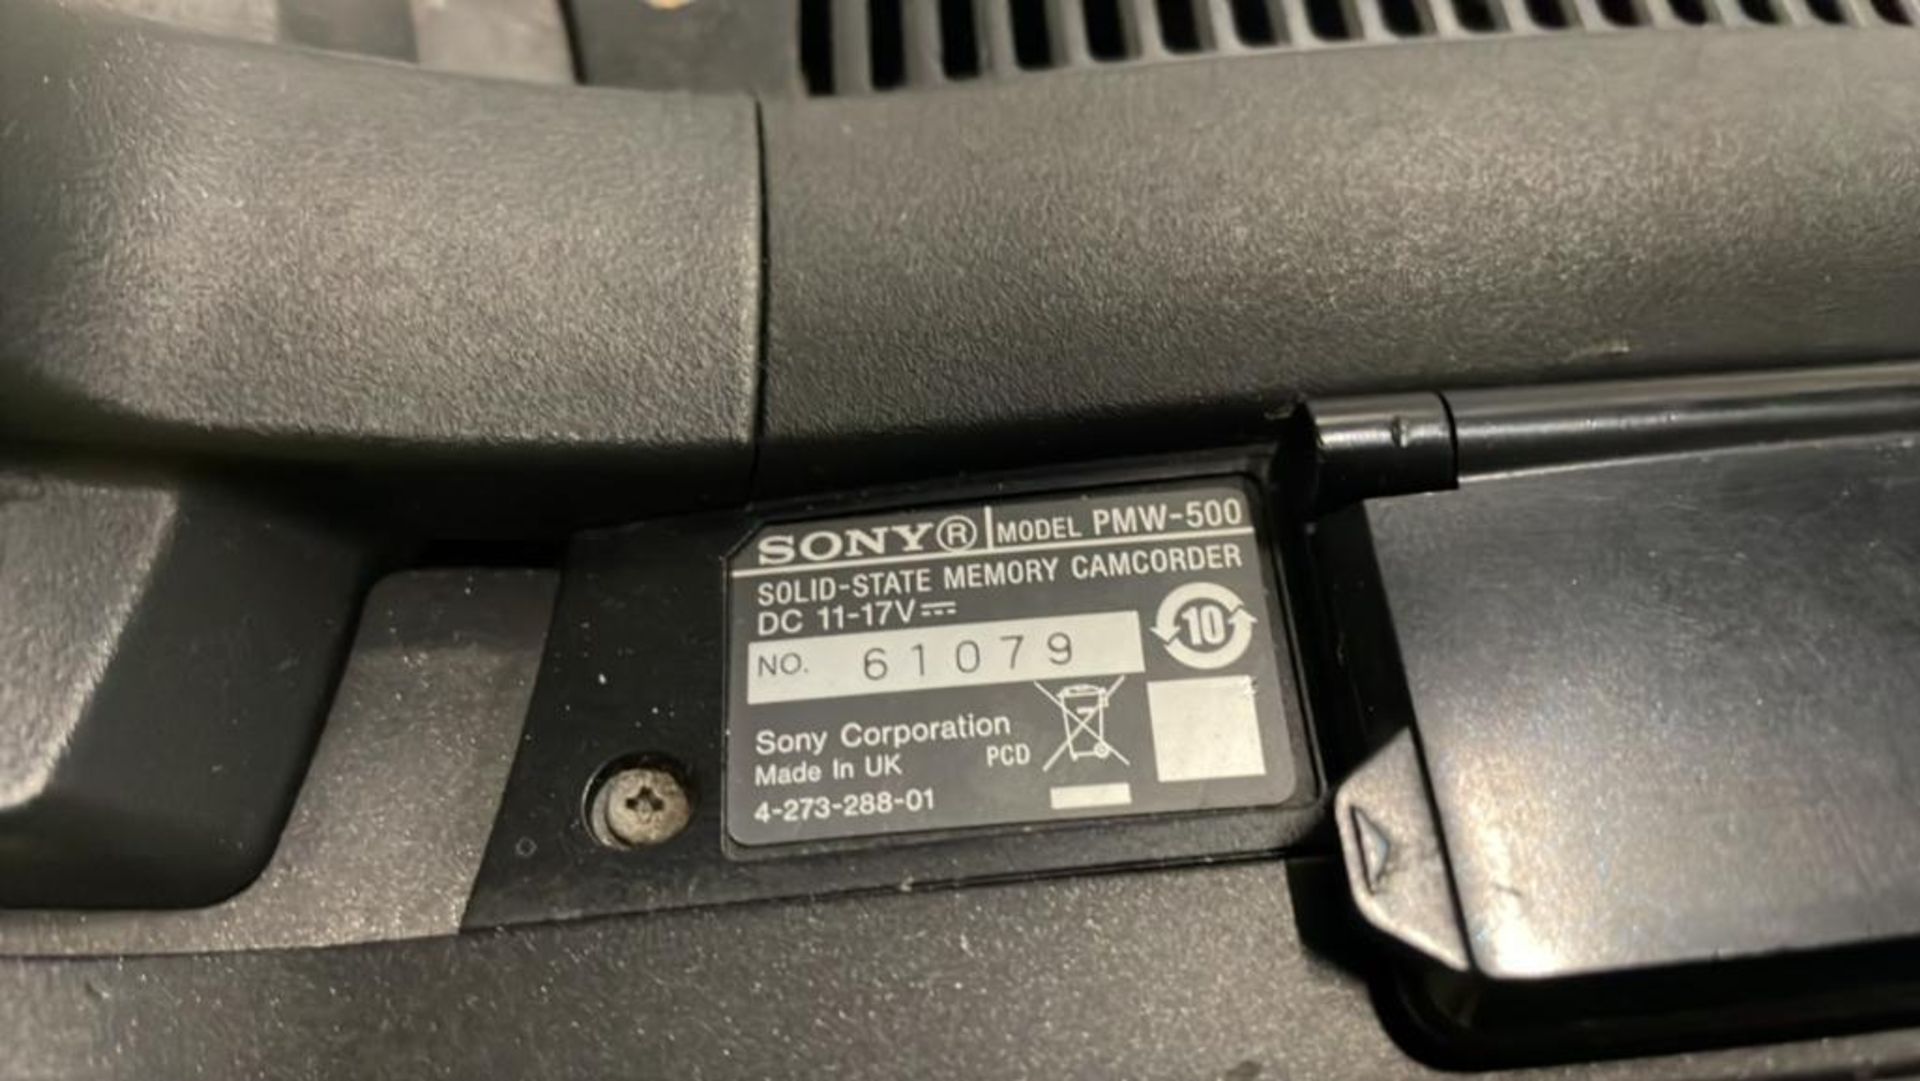 Sony PMW-500 SN: 61079 - Bild 5 aus 9